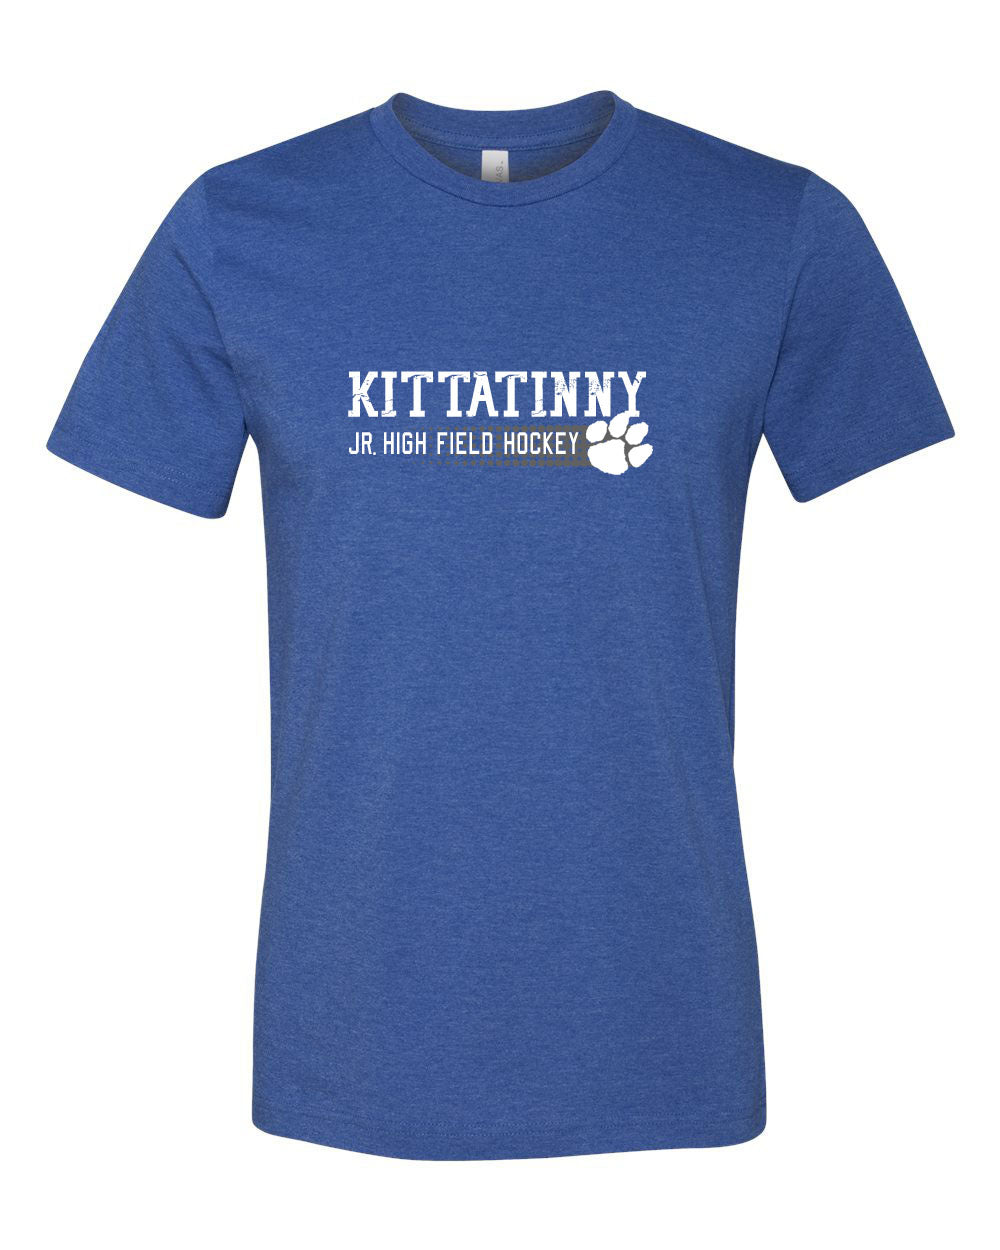 Kittatinny Jr High Field Hockey Design 3 t-Shirt